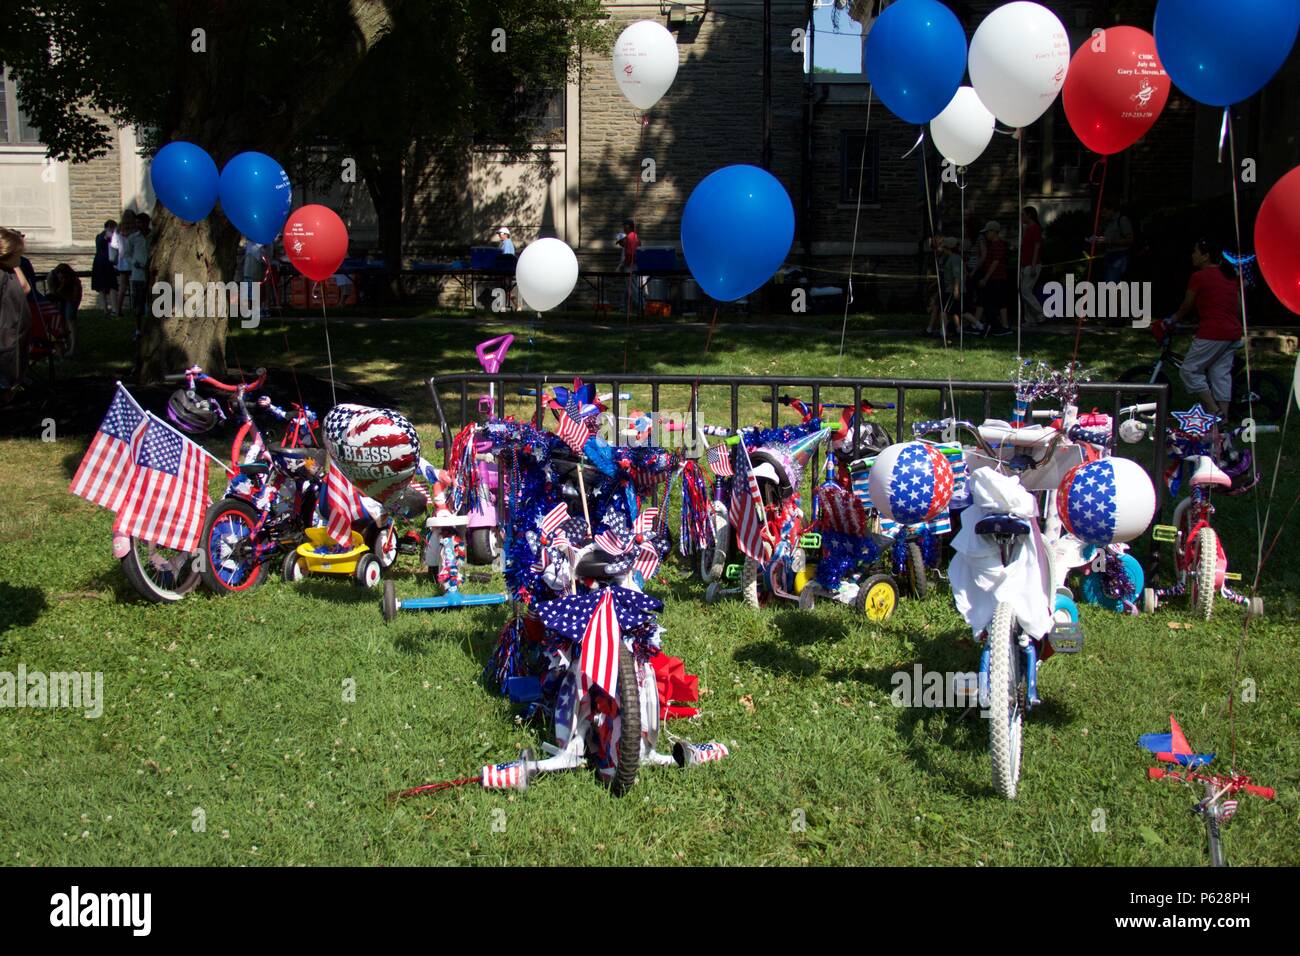 Philadelphia, PA, USA - Juli 4, 2012: Familien feiern Amerikas Unabhängigkeitstag dekoriert mit Fahrrad einen jährlichen Kinder Parade in Philadelphia. Stockfoto